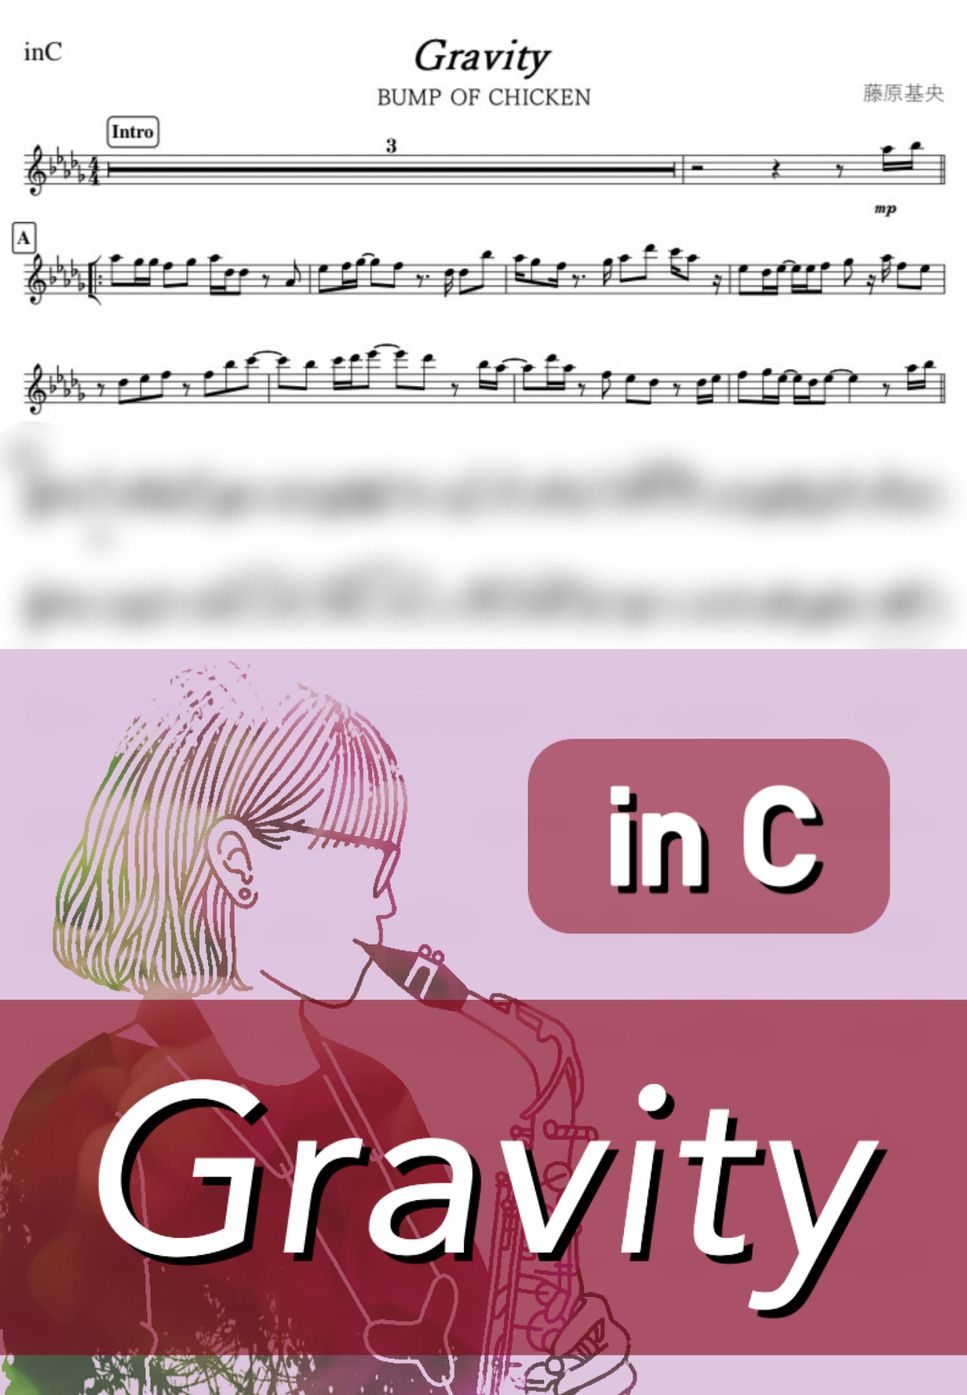 BUMP OF CHICKEN - Gravity (C) by kanamusic